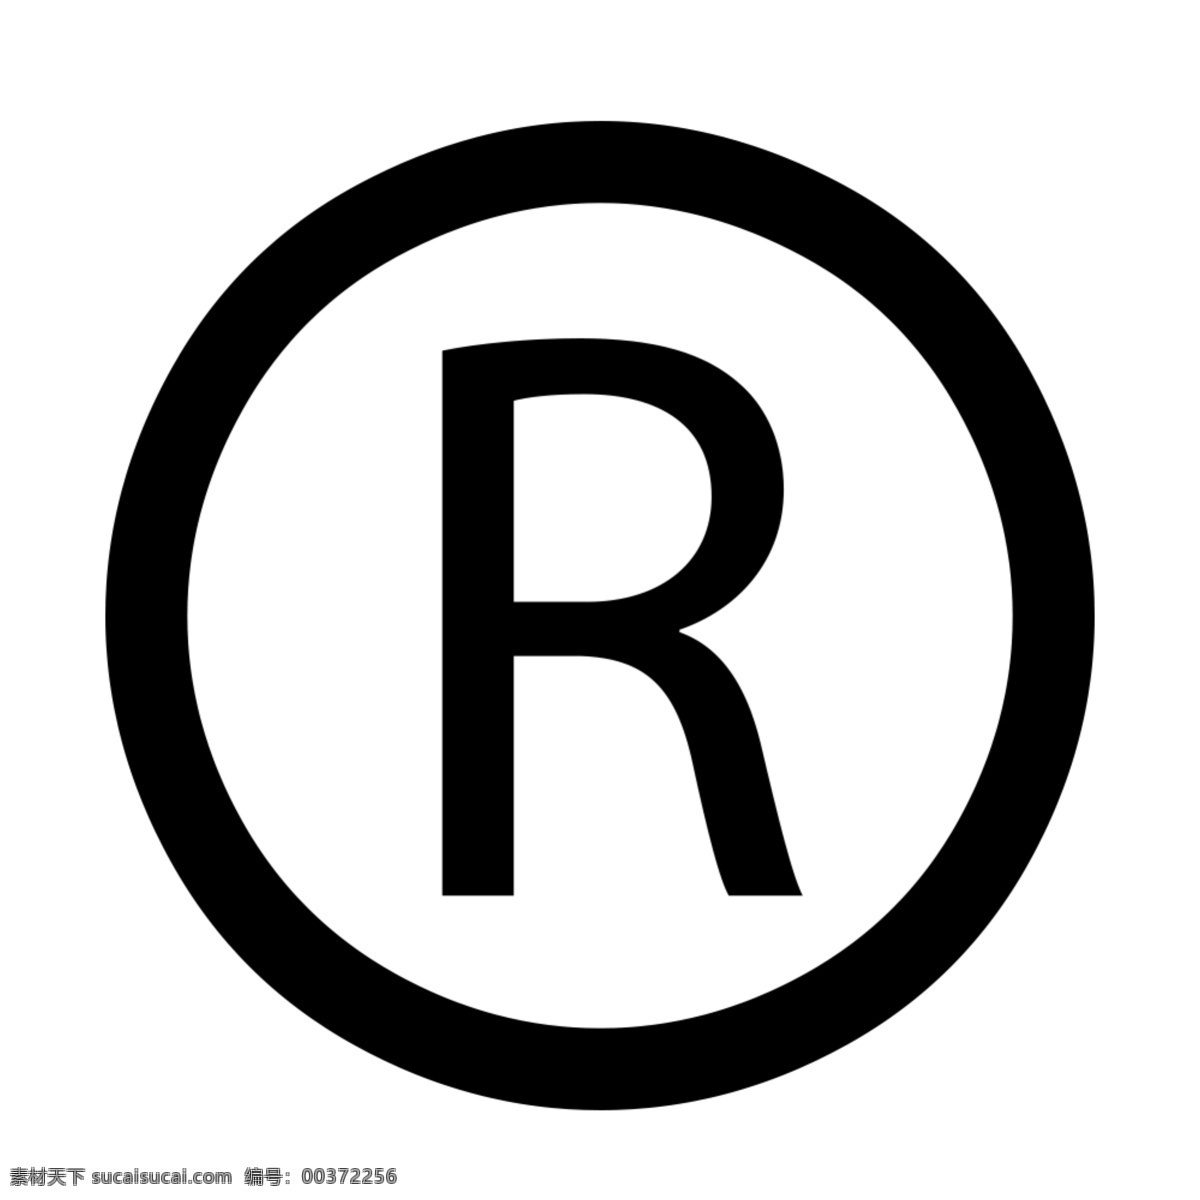 标准 r 标 透明 底 图标 ps r标 商标 注册标 标志图标 企业 logo 标志